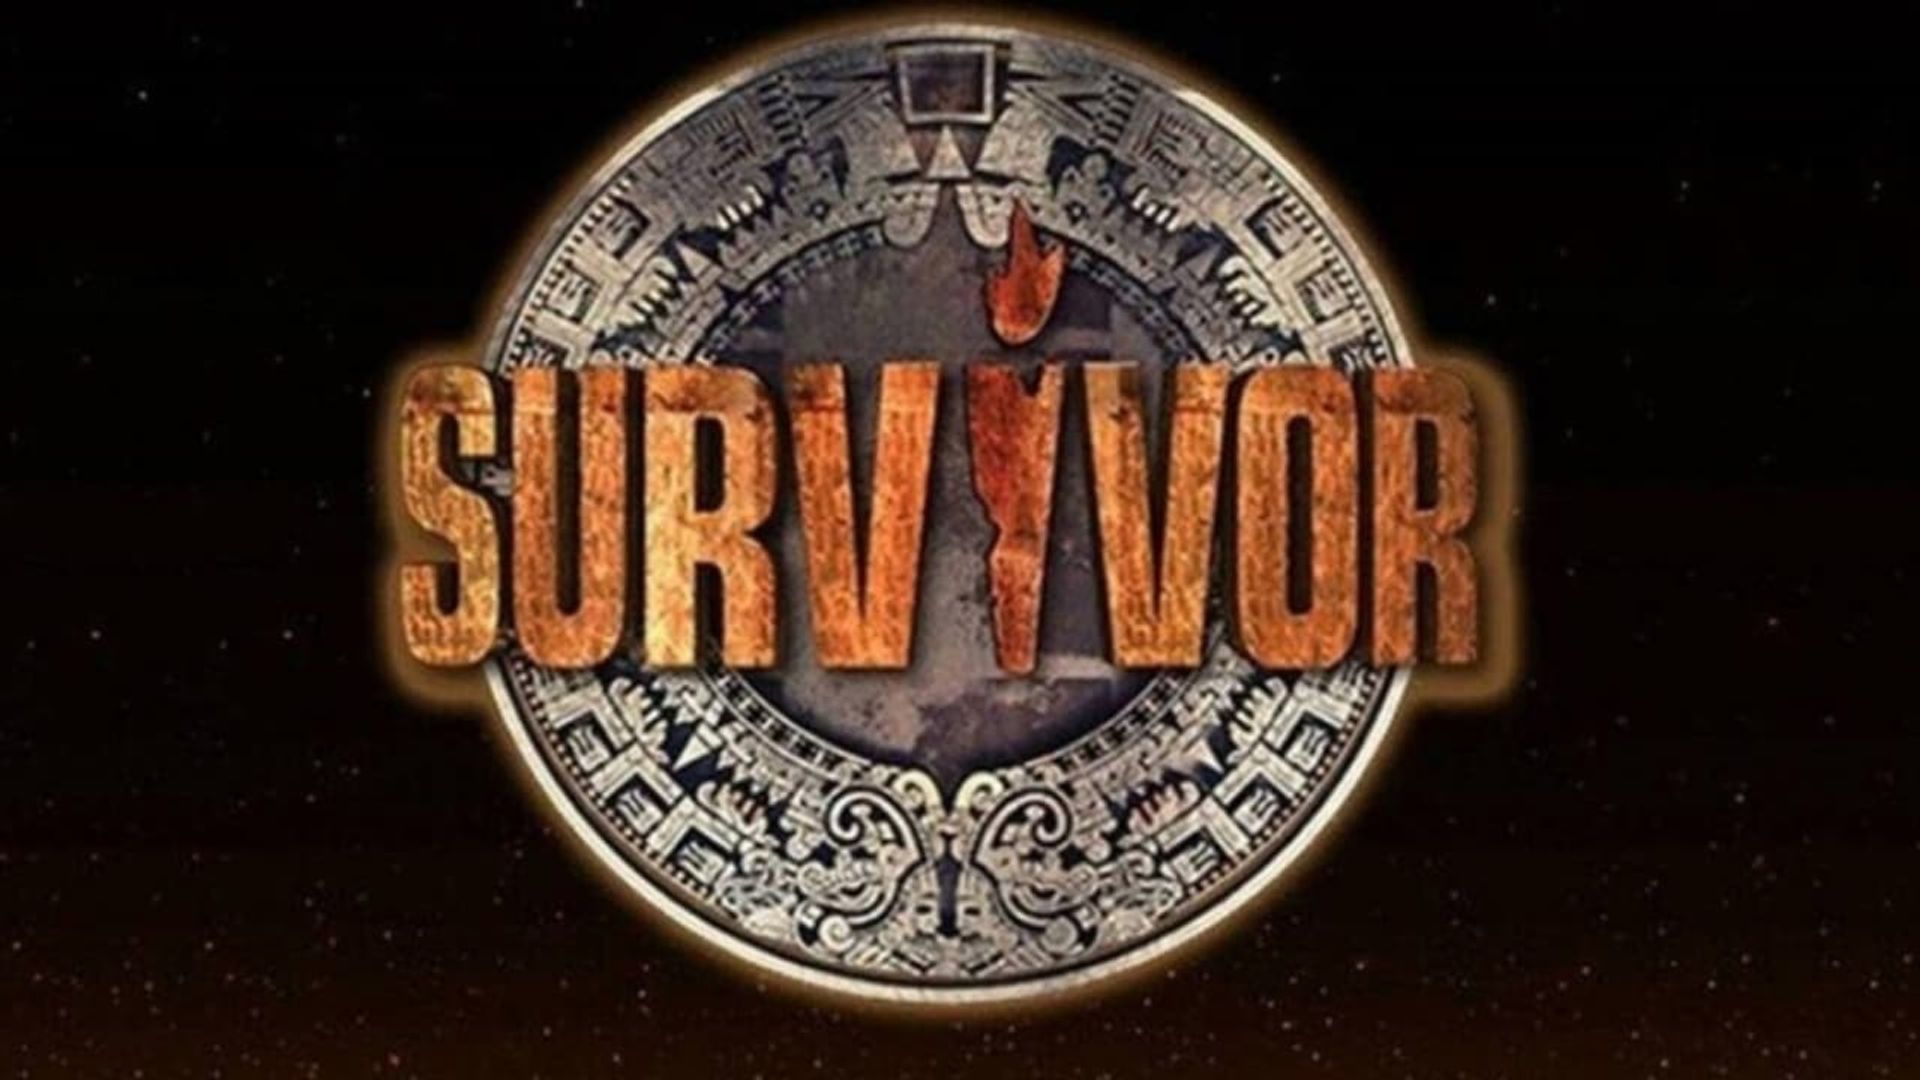 Survivor 2017 background